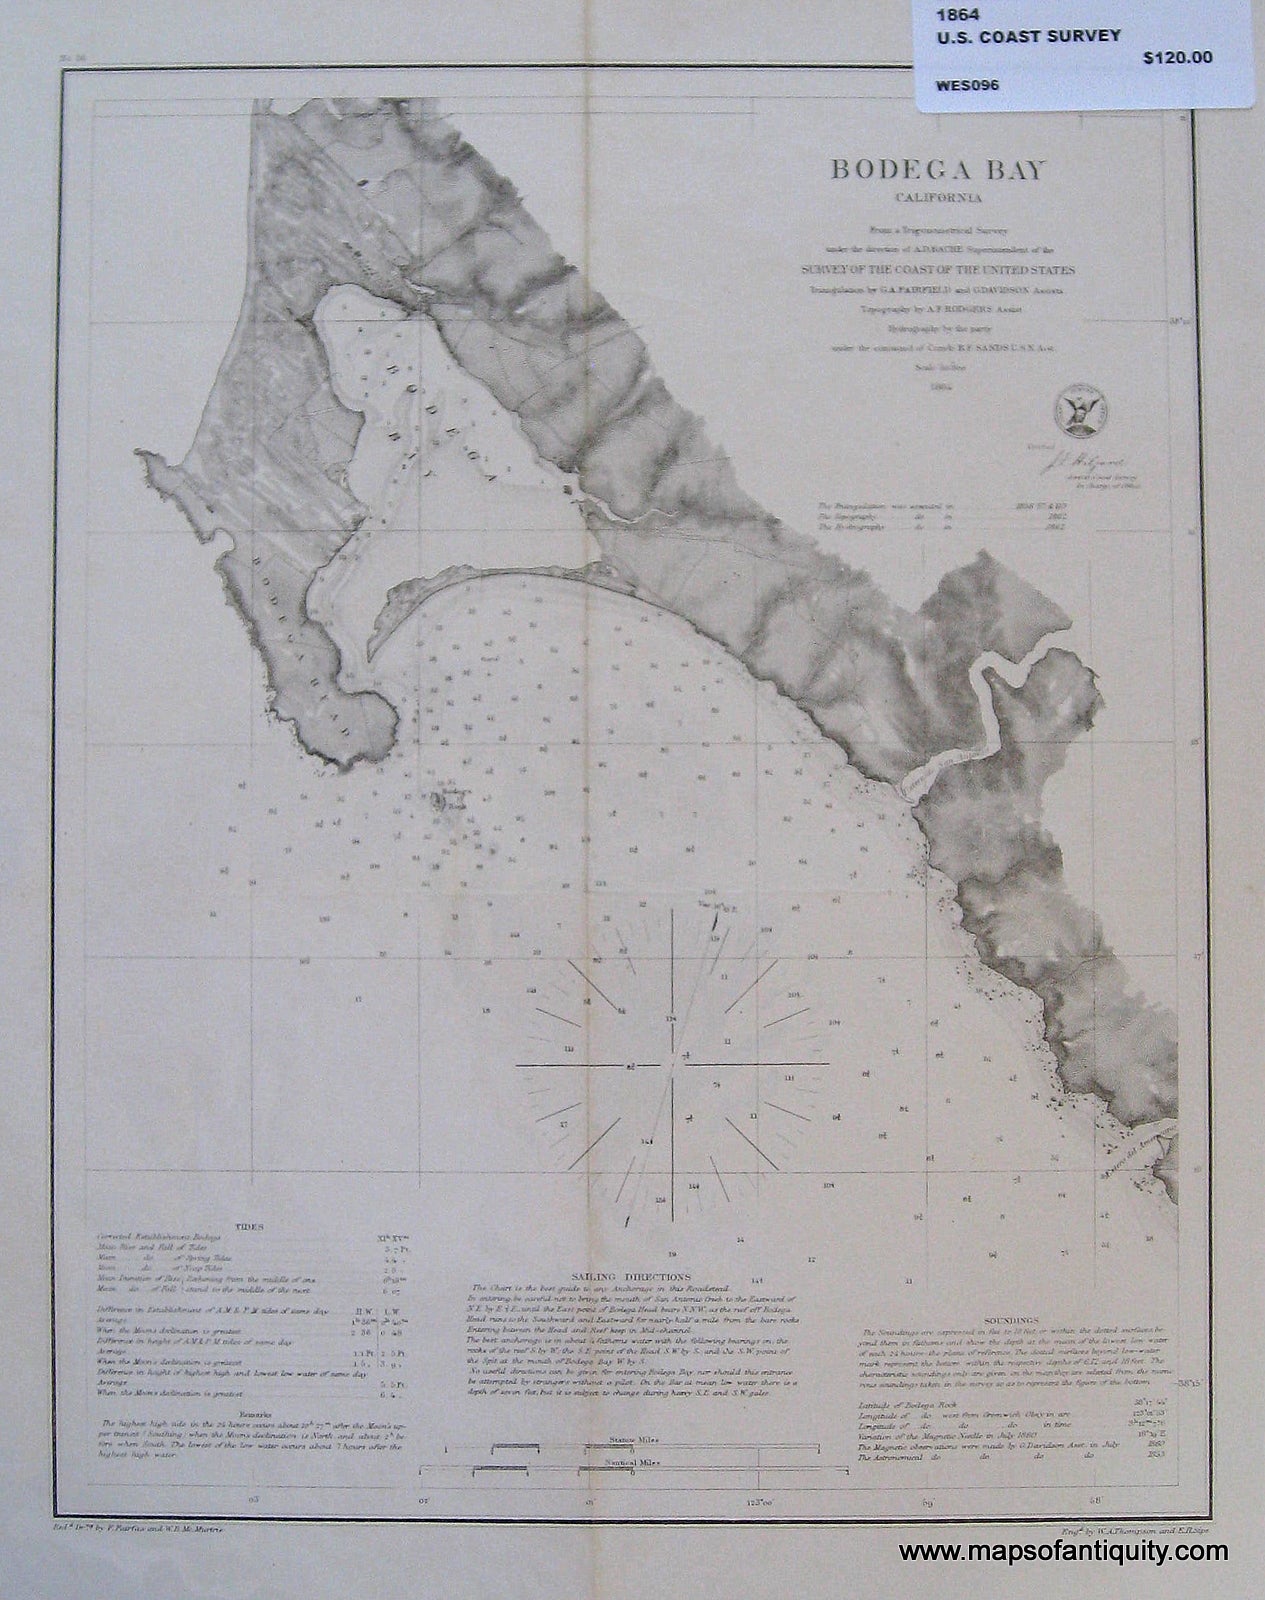 Black-and-White-Antique-Coastal-Chart-Bodega-Bay-California-**********-California-Antique-Nautical-Charts-1864-U.S.-Coast-Survey-Maps-Of-Antiquity